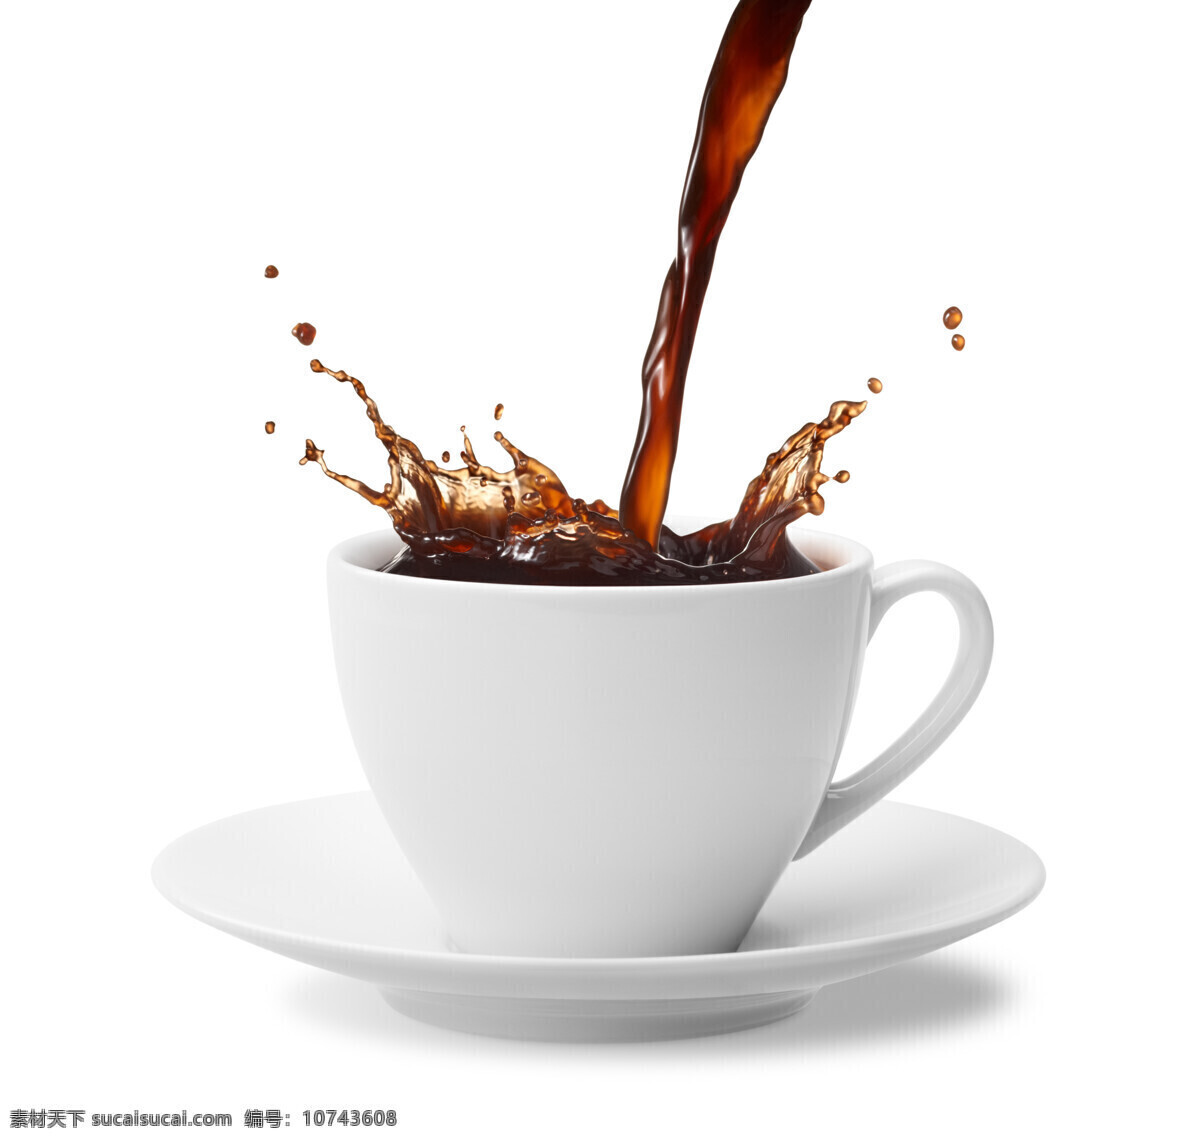 倒 咖啡 动感咖啡 倒咖啡 coffee 咖啡杯 美味 健康 营养 咖啡豆主题 食物原料 餐饮美食 咖啡图片